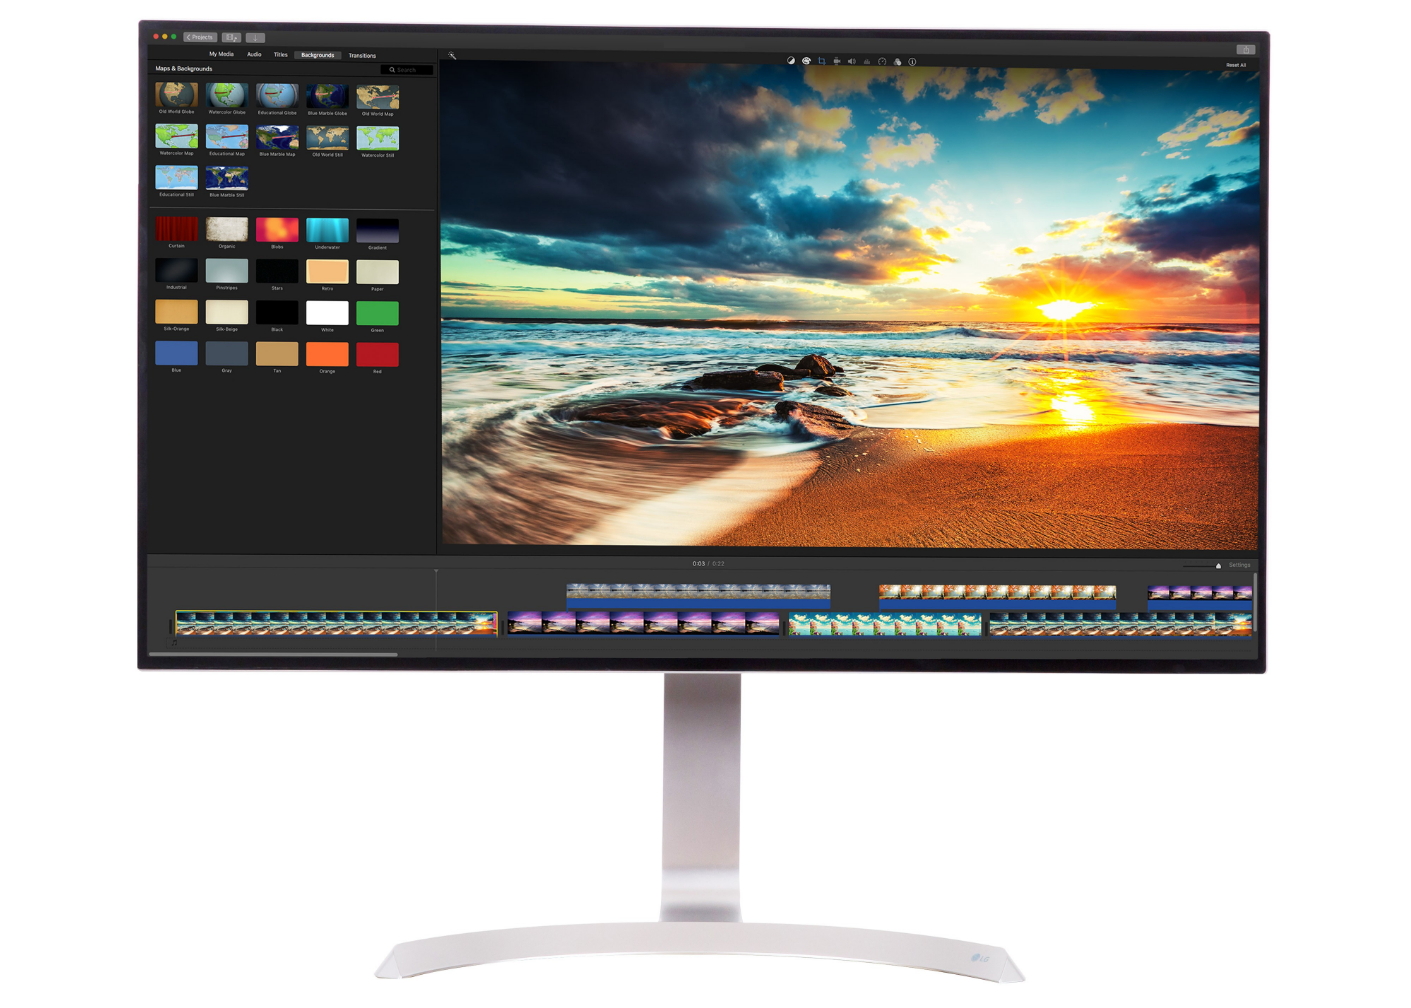 LG presentará el monitor LG 32UD99, 4K UHD compatible con HDR #CES2017